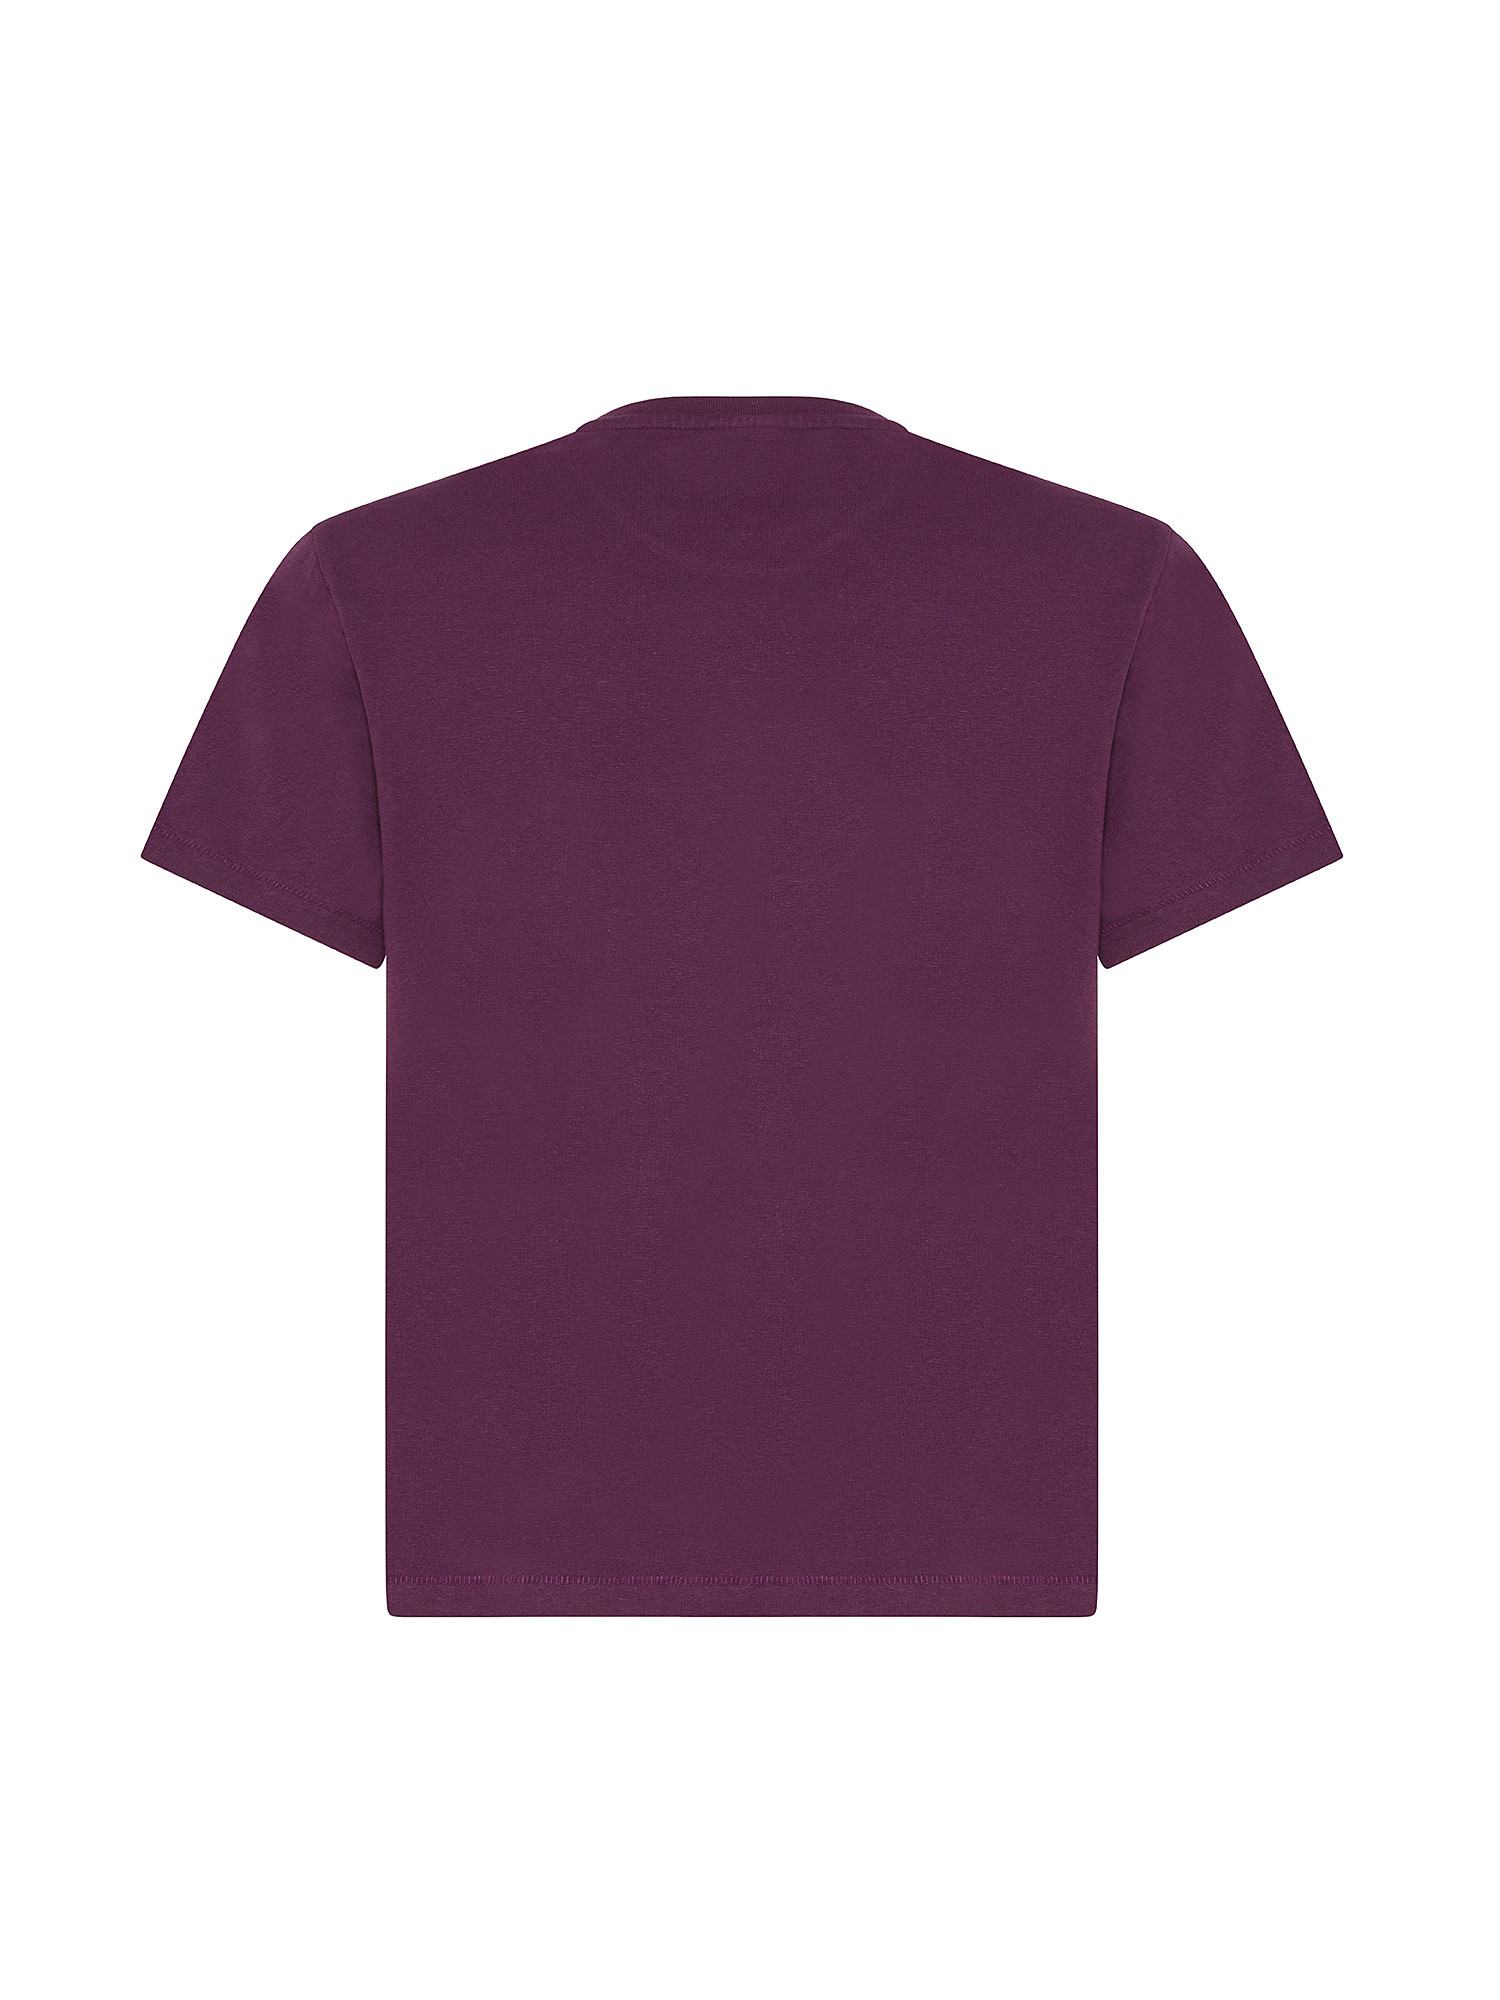 Levi's - Cotton T-shirt, Red Bordeaux, large image number 1